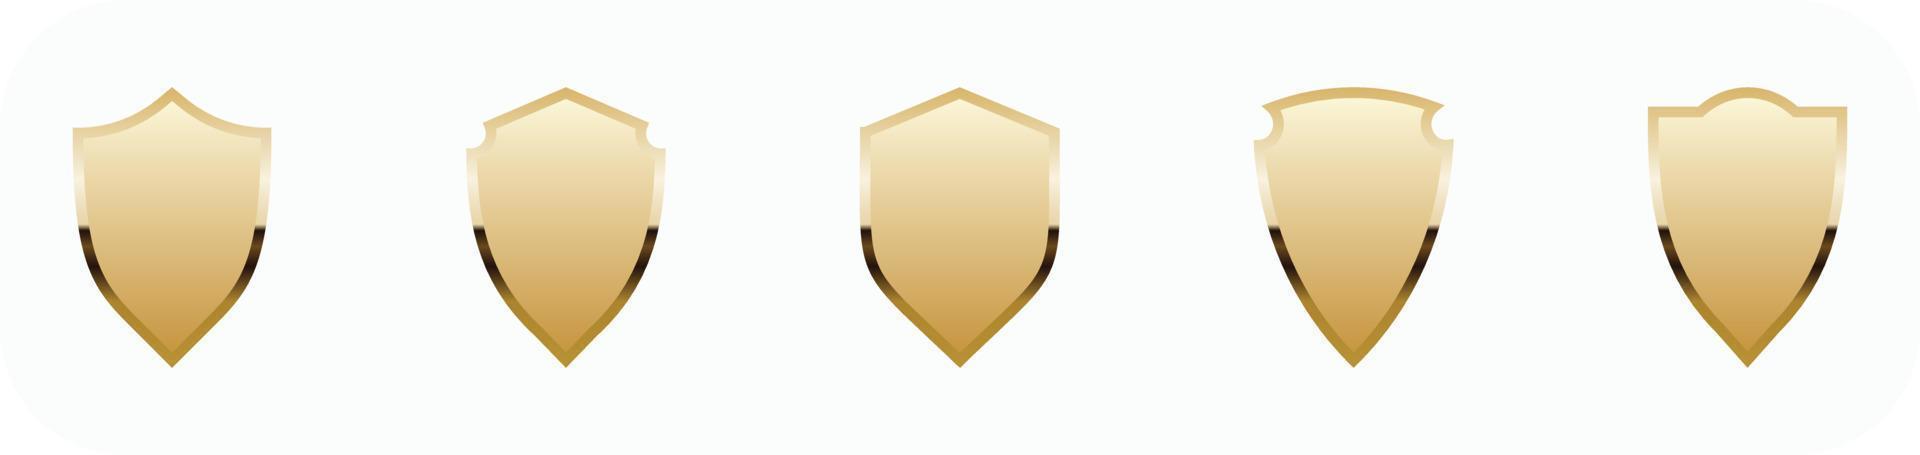 seguridad, color dorado, insignia, icono, eps10, -, vector